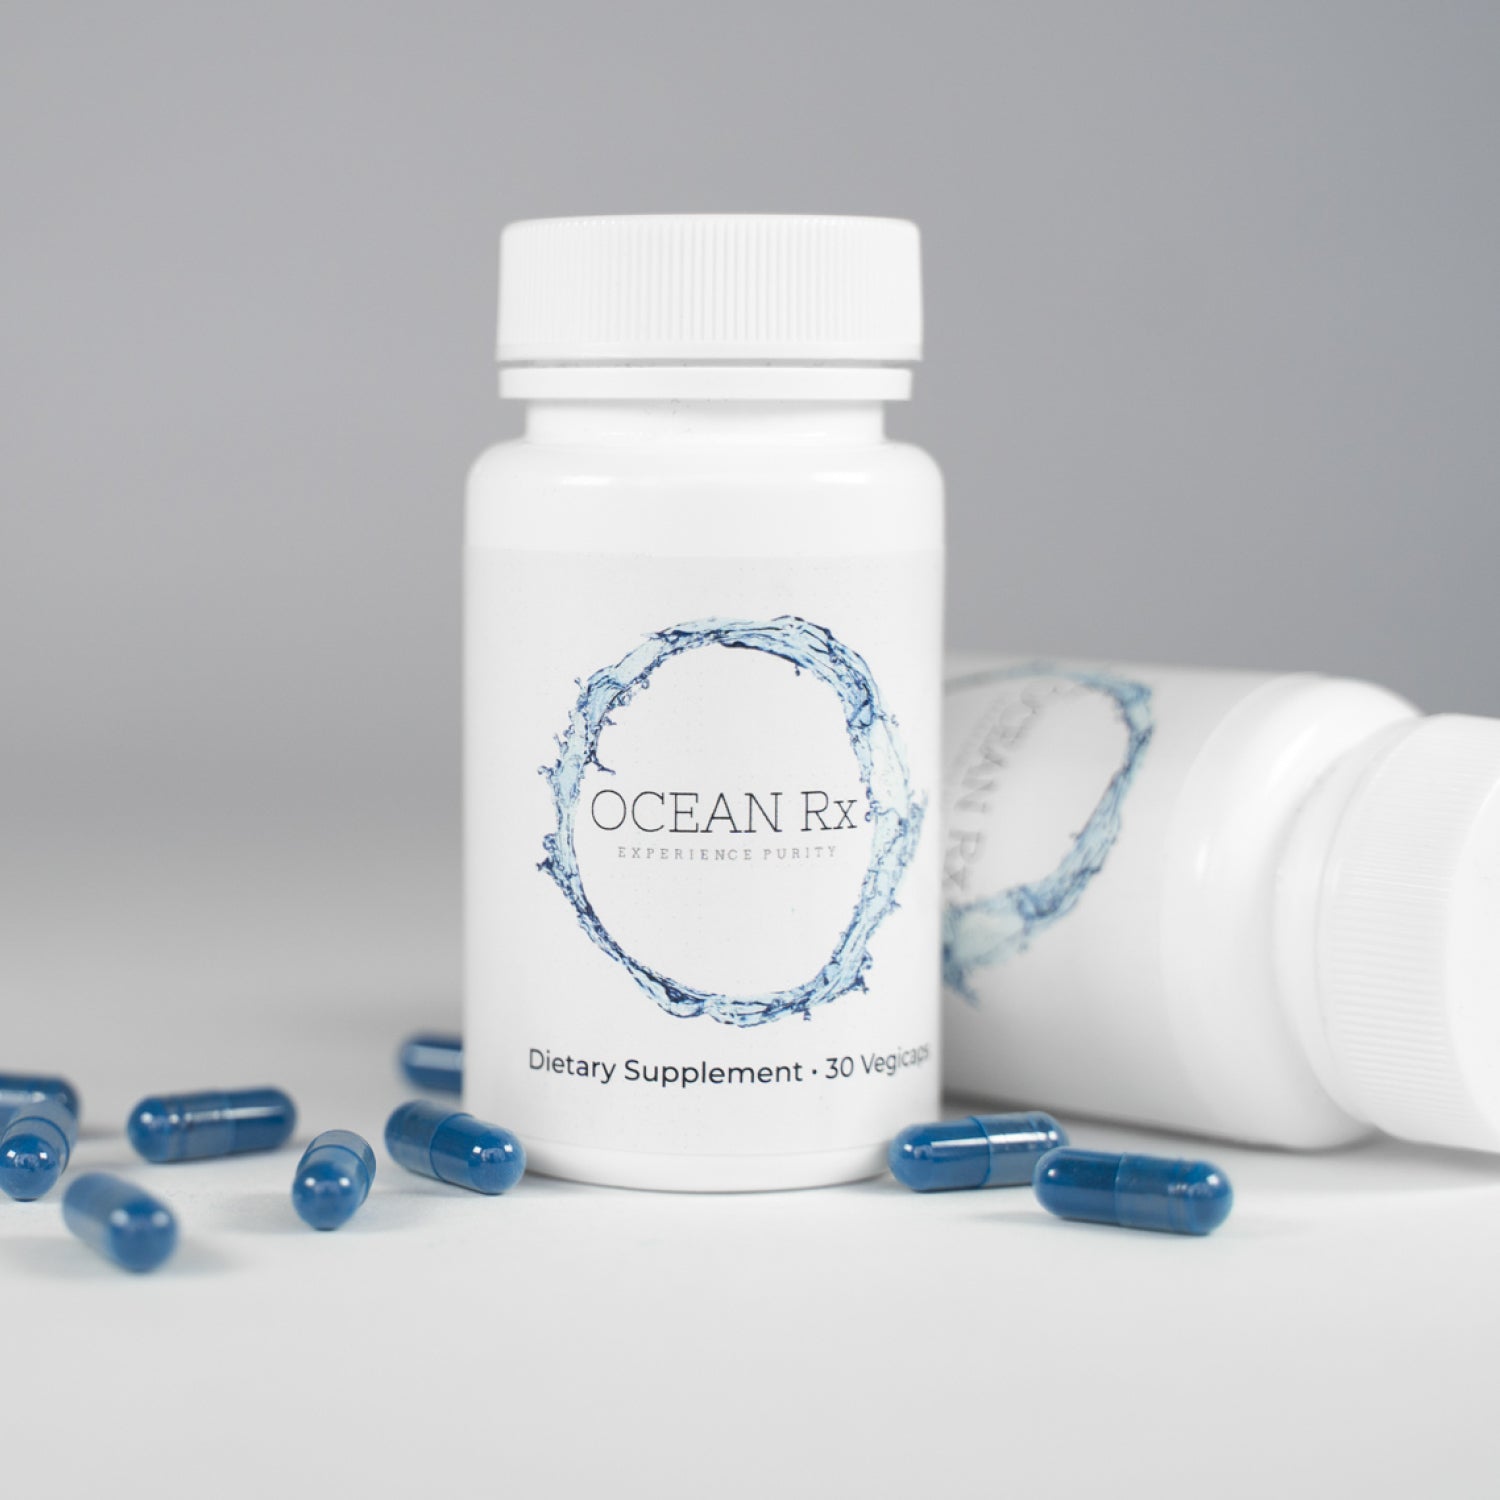 Ocean Rx -  A Pure Prebiotic Supplement